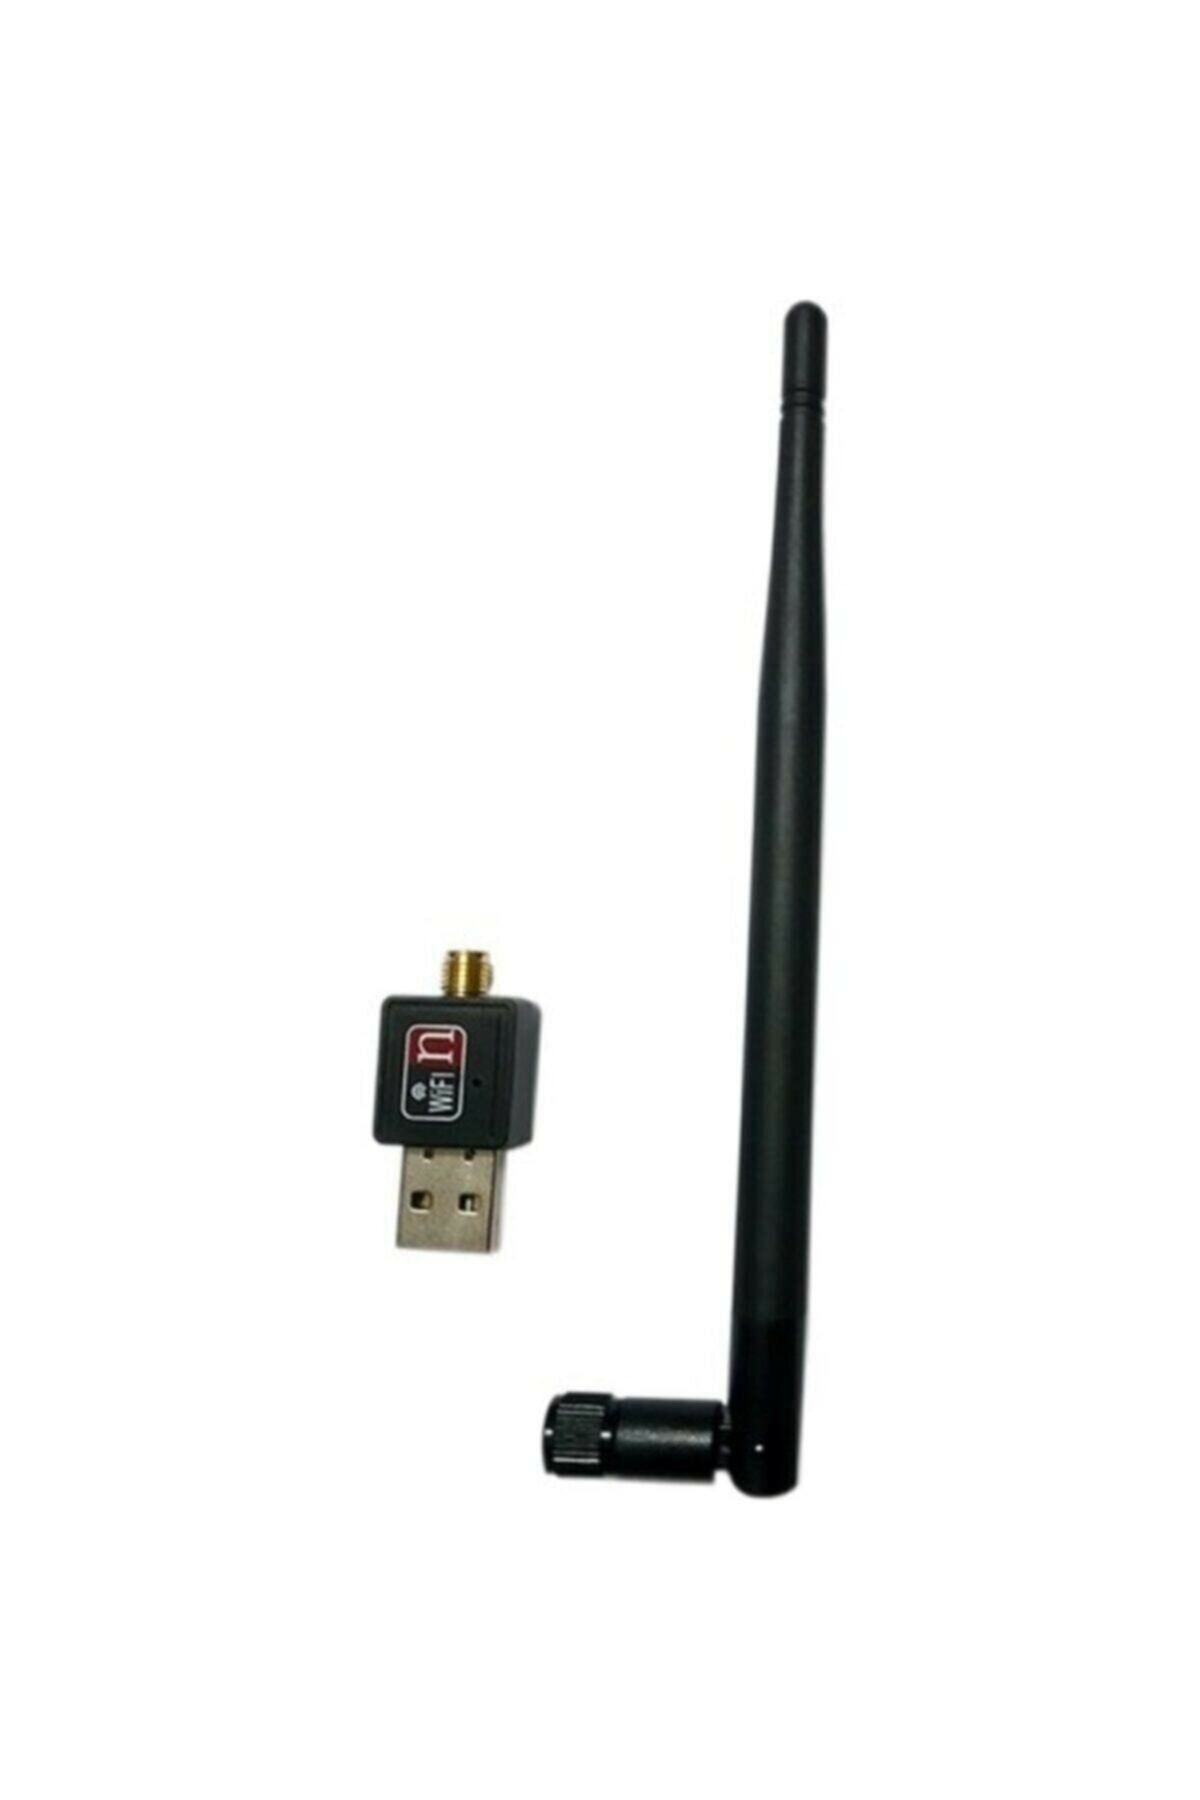 Platoon Usb Adaptör 1200 Mbps Wireless Internet Kablosuz Antenli Adaptör Ağ Usb Wifi 2.4 Ghz